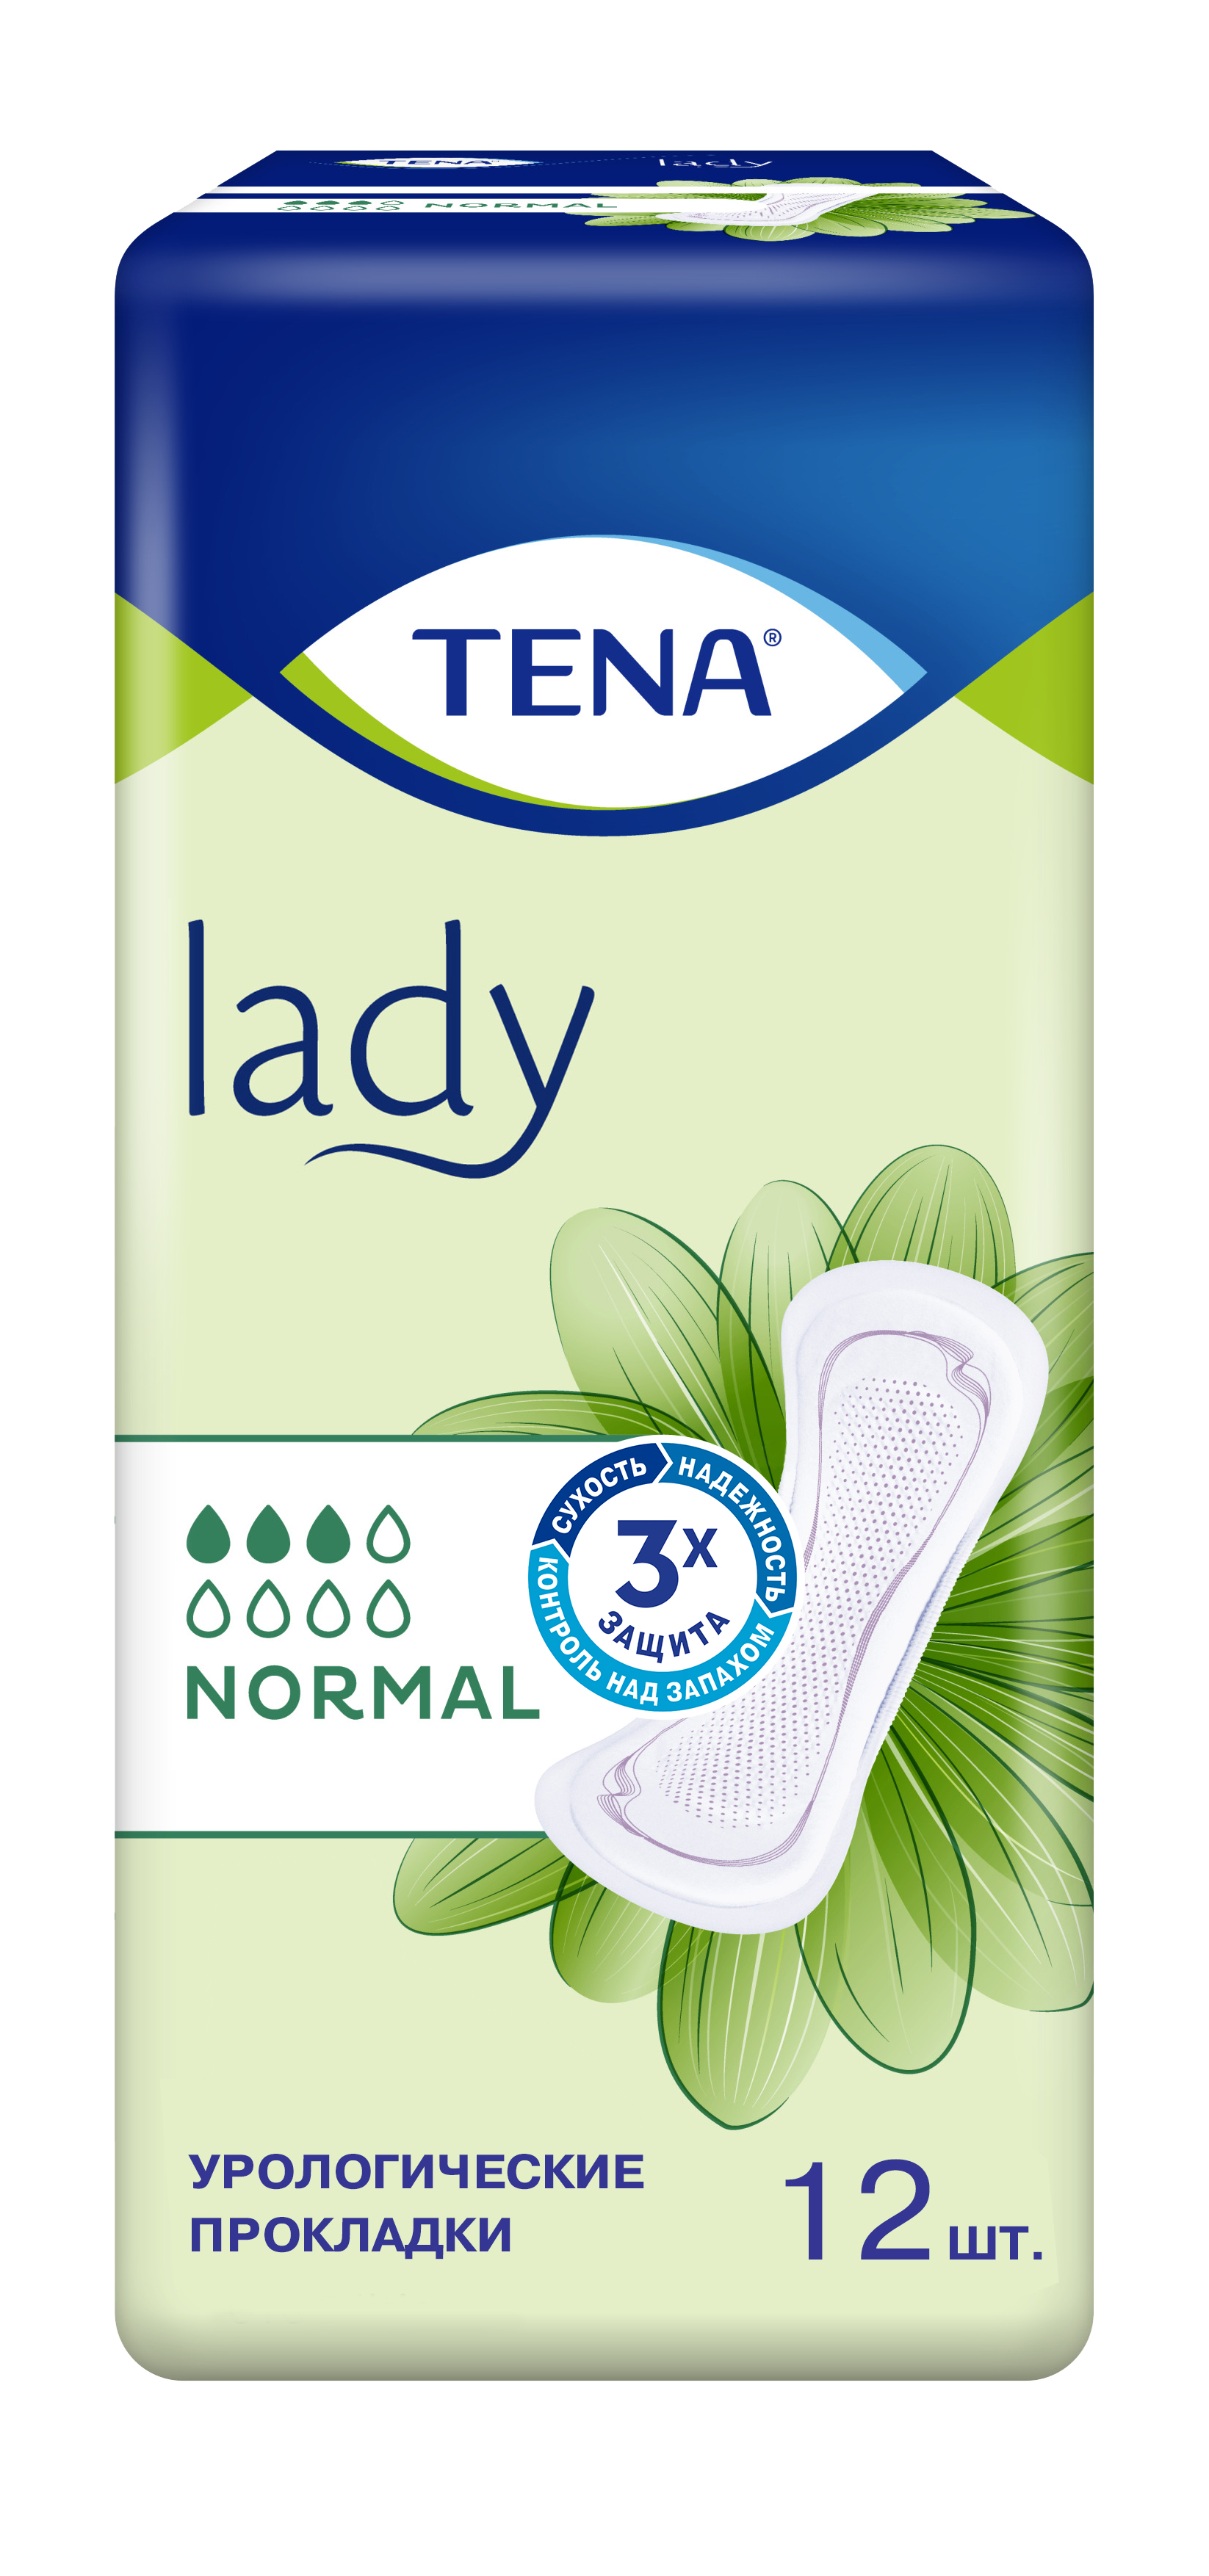 TENA Lady Normal  прокладки, 12 шт.